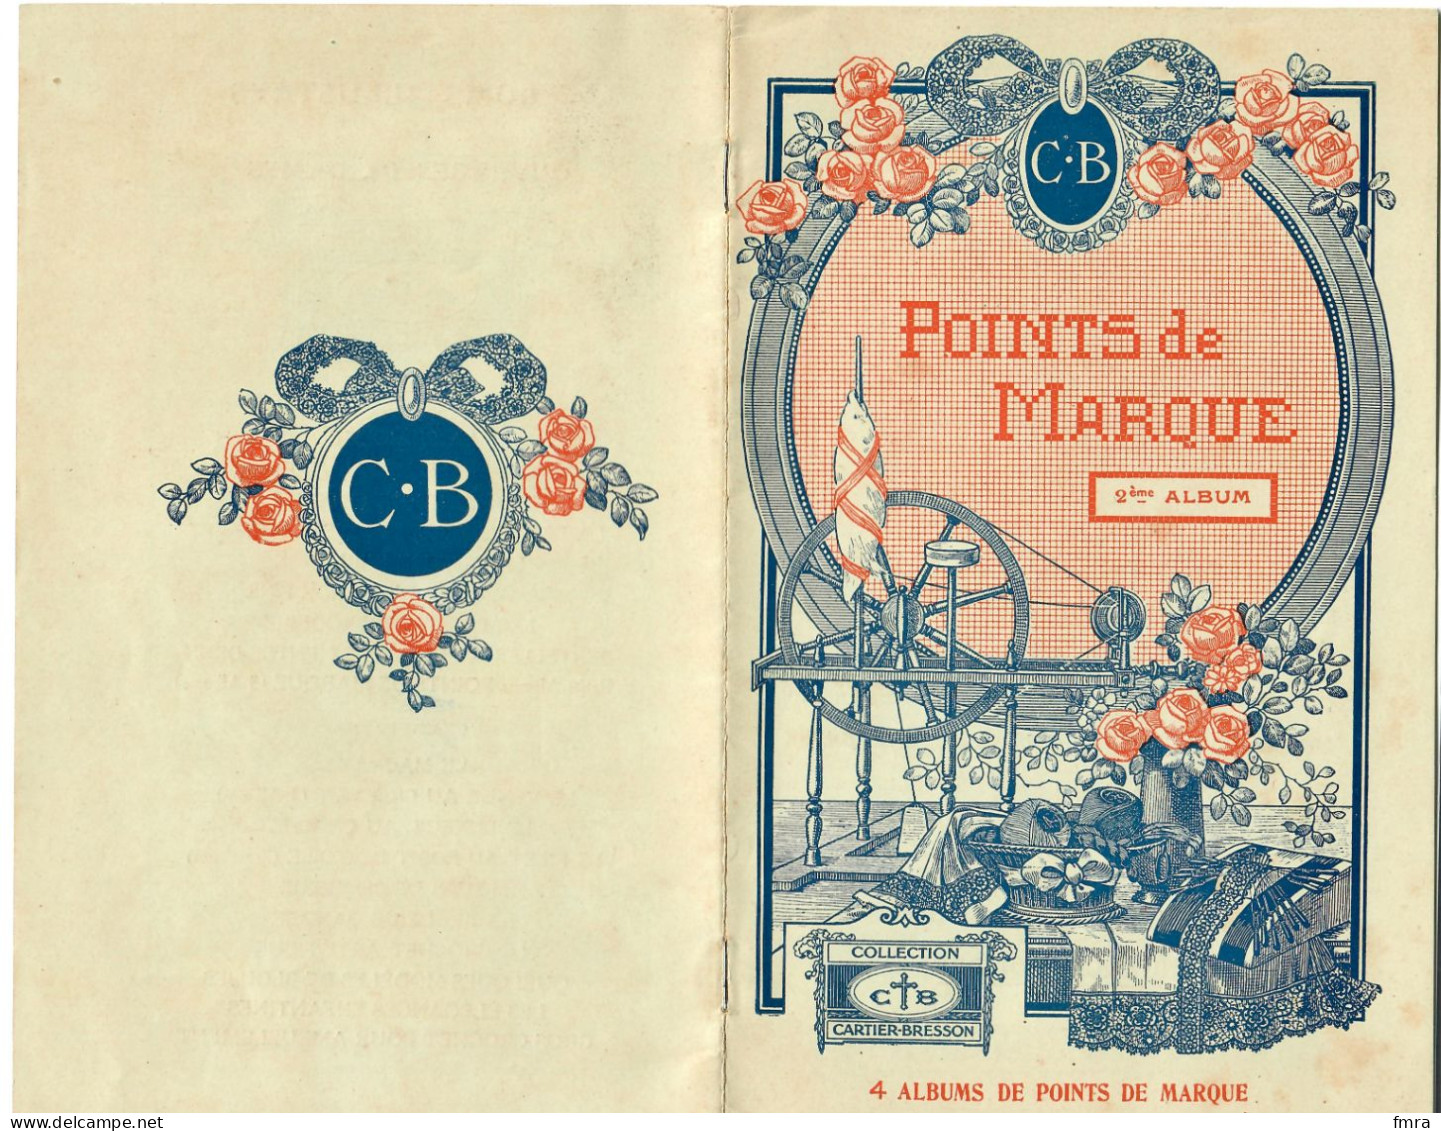 Album N°2 POINTS De MARQUE - Collection Cartier-Bresson - 12 Pp - état Neuf -  /GP84 - Cross Stitch